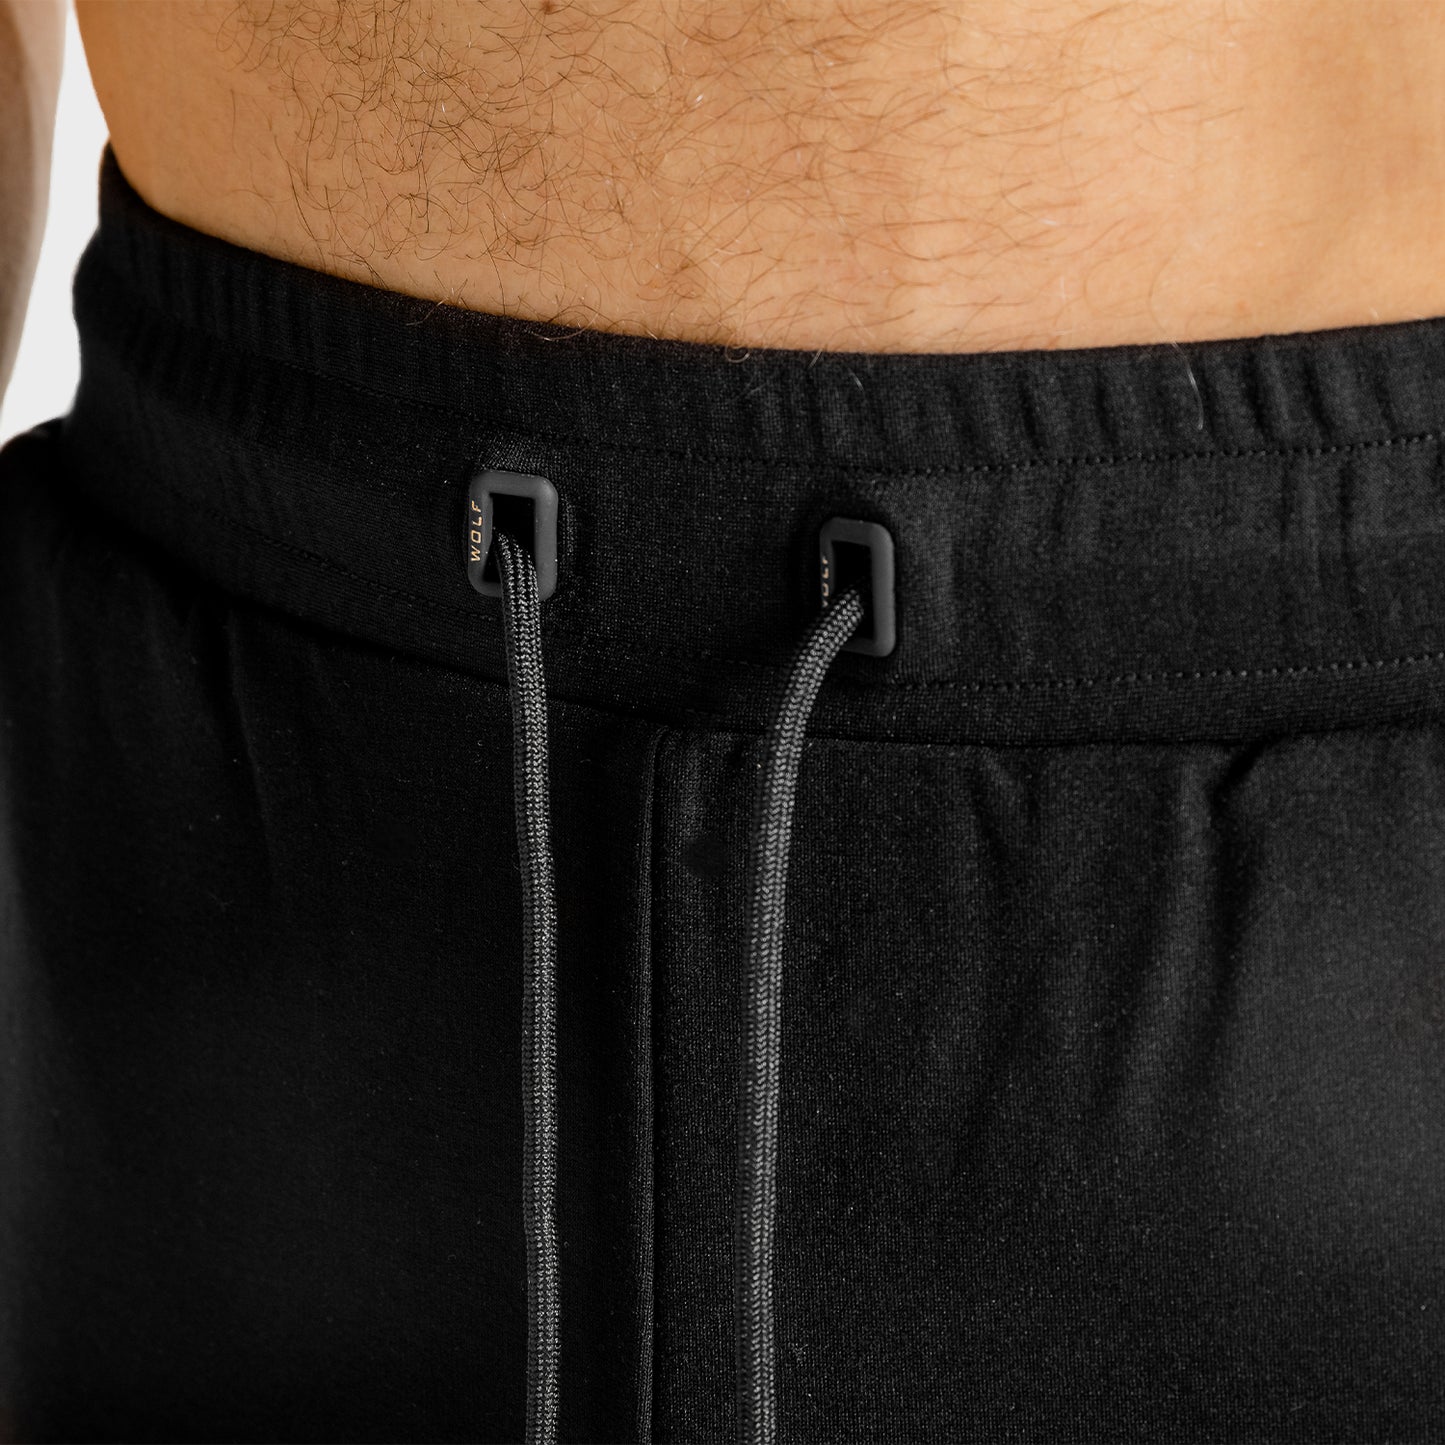 squatwolf-gym-wear-core-joggers-black-workout-pants-for-men